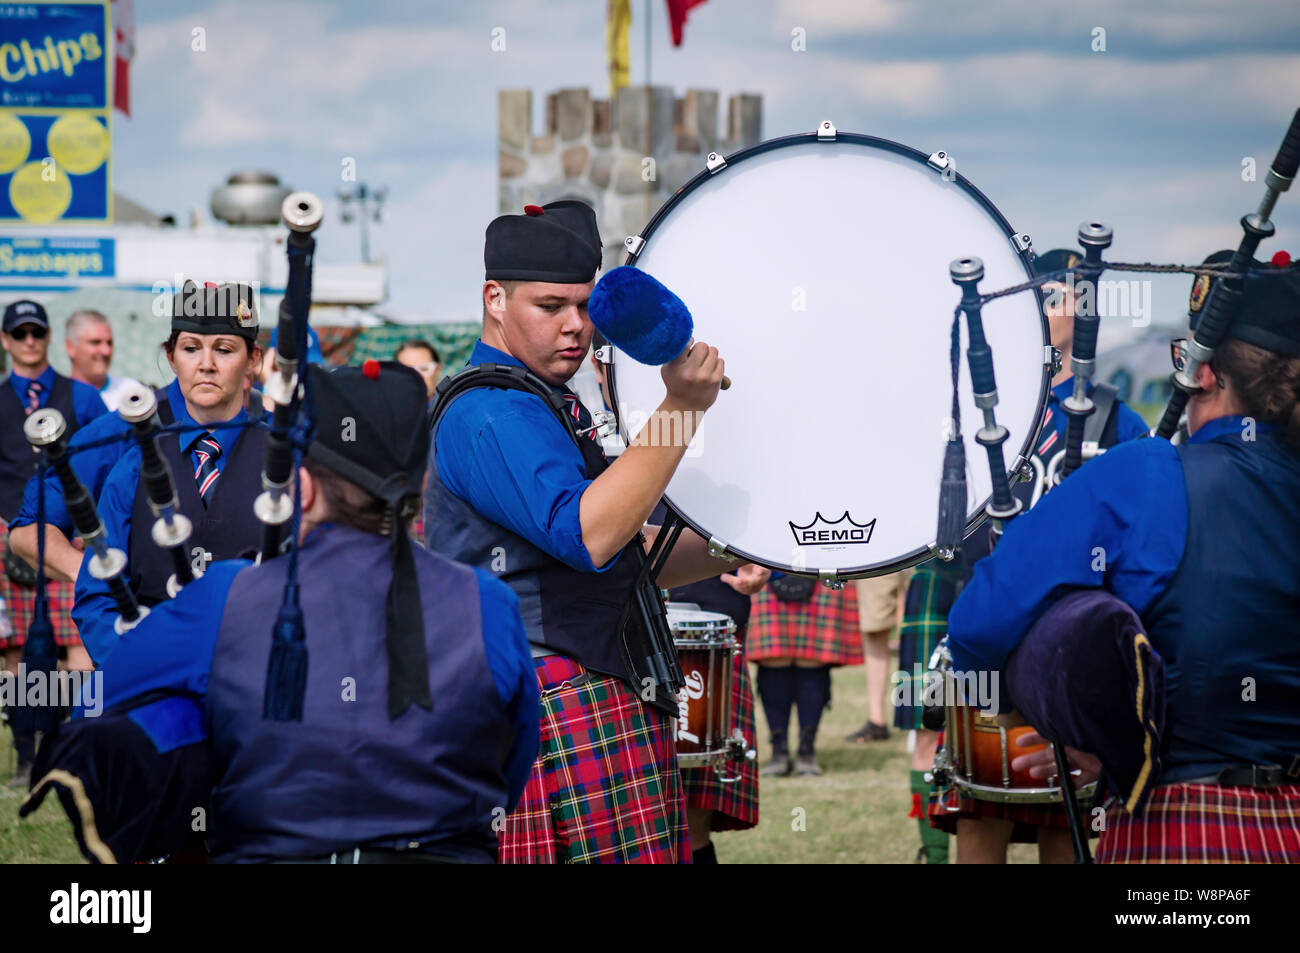 Fergus, Ontario, Kanada - 08 11 2018: Schlagzeuger der Hamilton Polizei Rohre und Trommeln Band paricipating in der Pipe Band Contest von Pipers und Pip gehalten Stockfoto